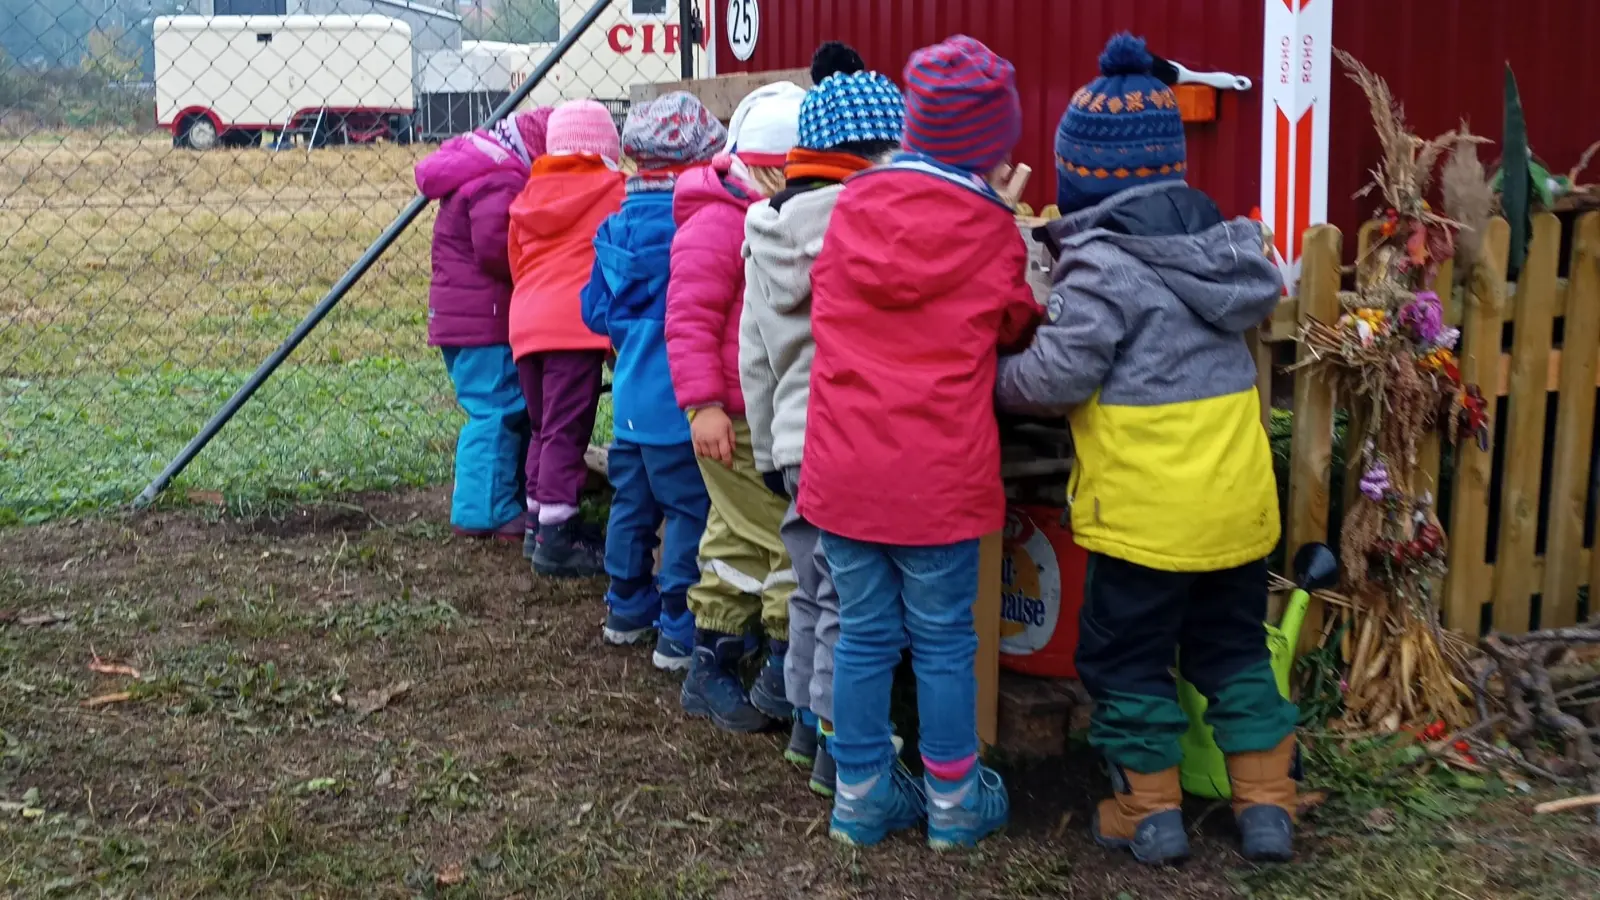 Mütze auf, feste Schuhe an: Die Kinder der neuen Naturgruppe sind bereit für viele schöne Erlebnisse unter freiem Himmel. (Foto: Kinderhaus Marzling)